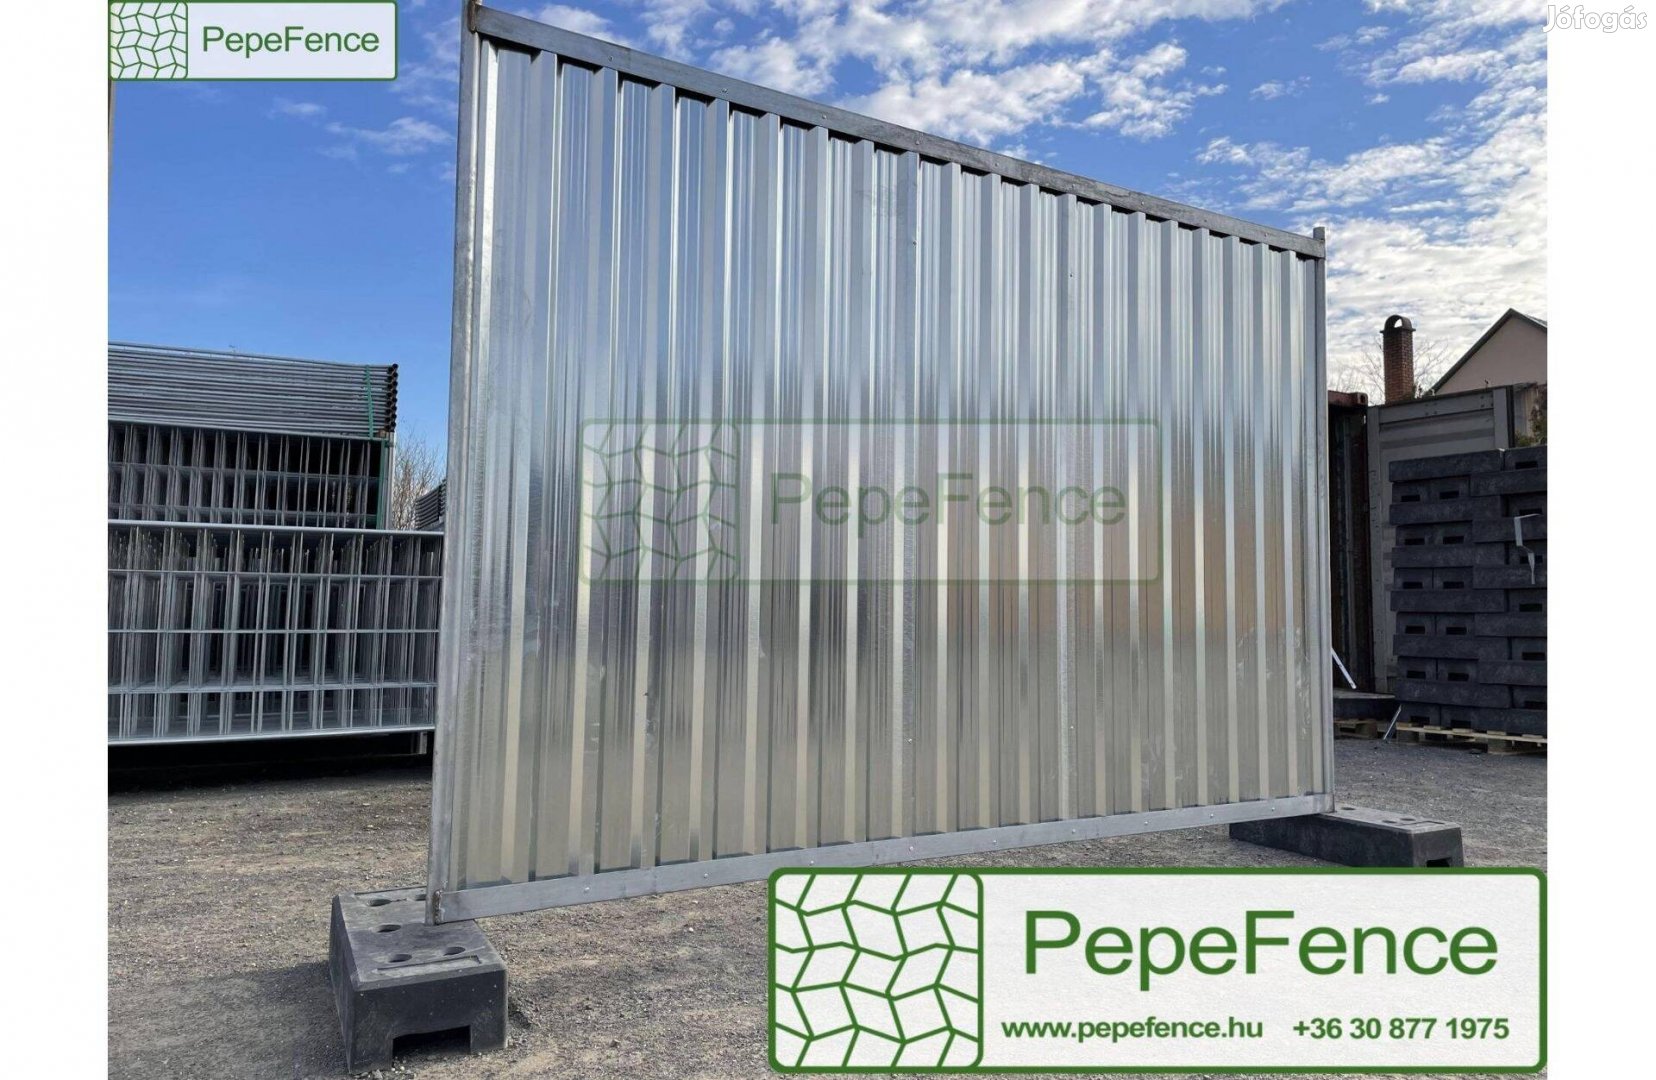 Pepefence - Új Mobilkerítés, Mobil kerítés 2x2,8m, Mobilkordon, Kordon